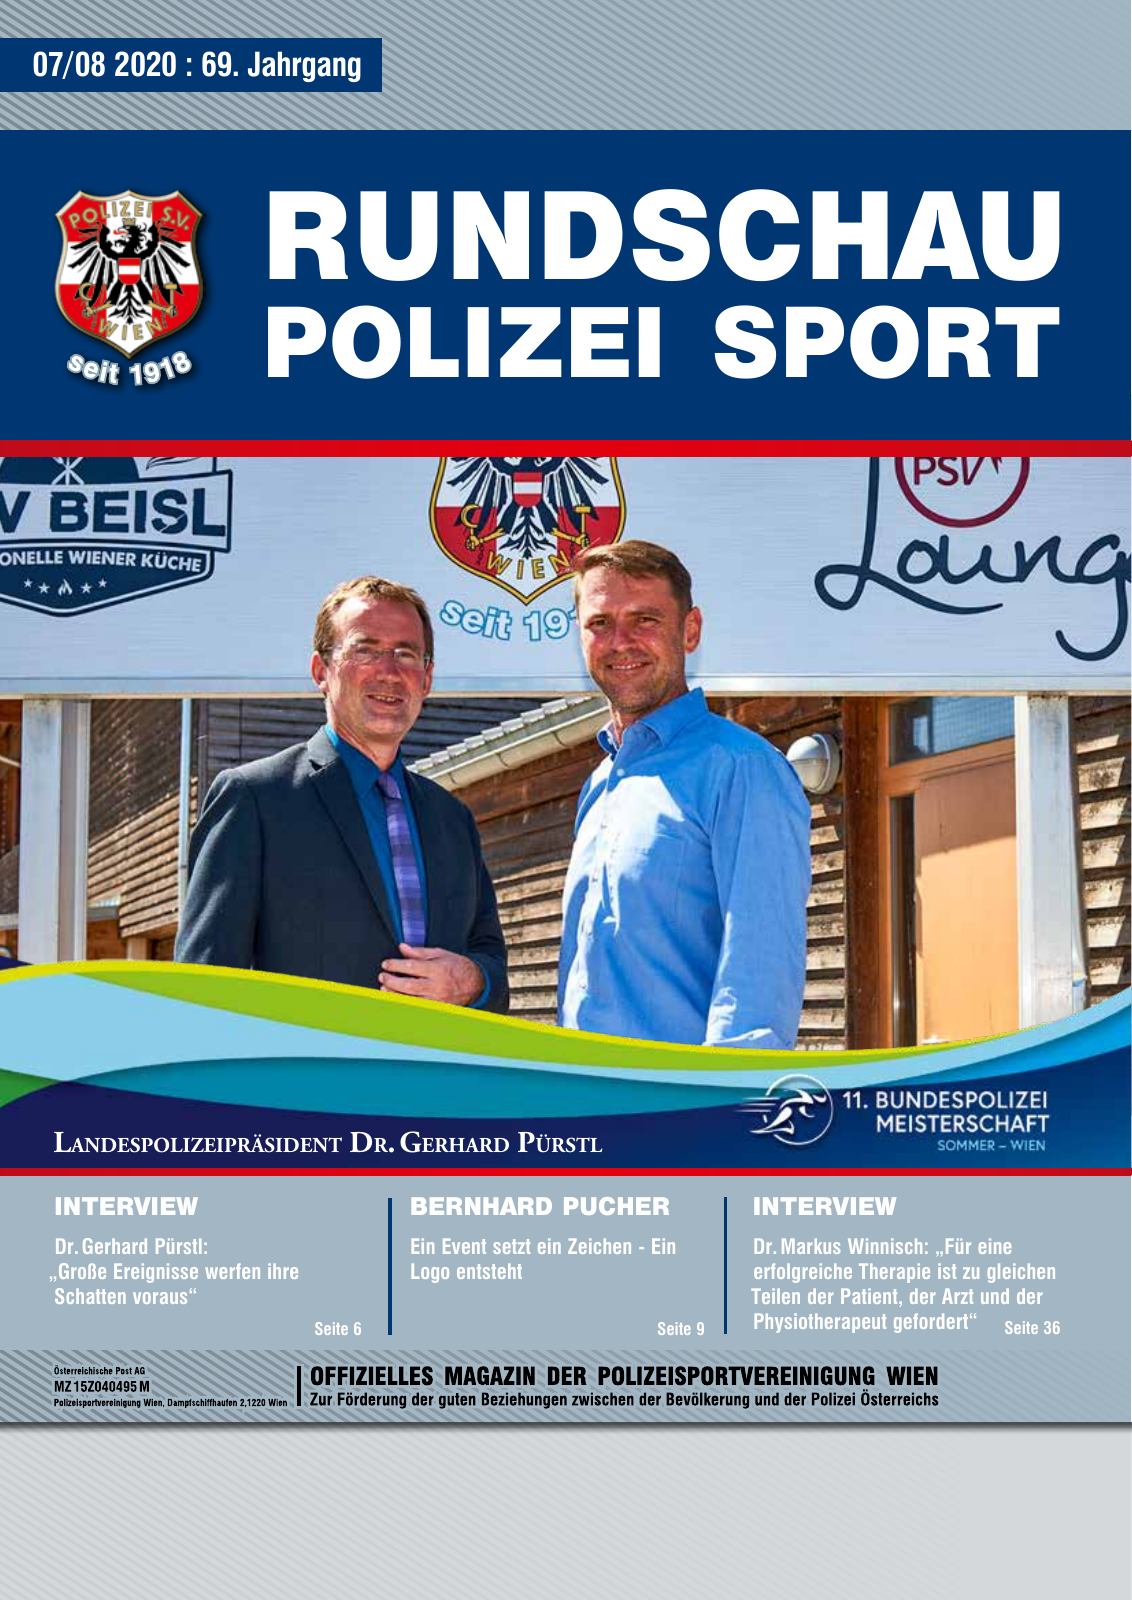 Vorschau Rundschau Polizei Sport 07-08/2020 Seite 1